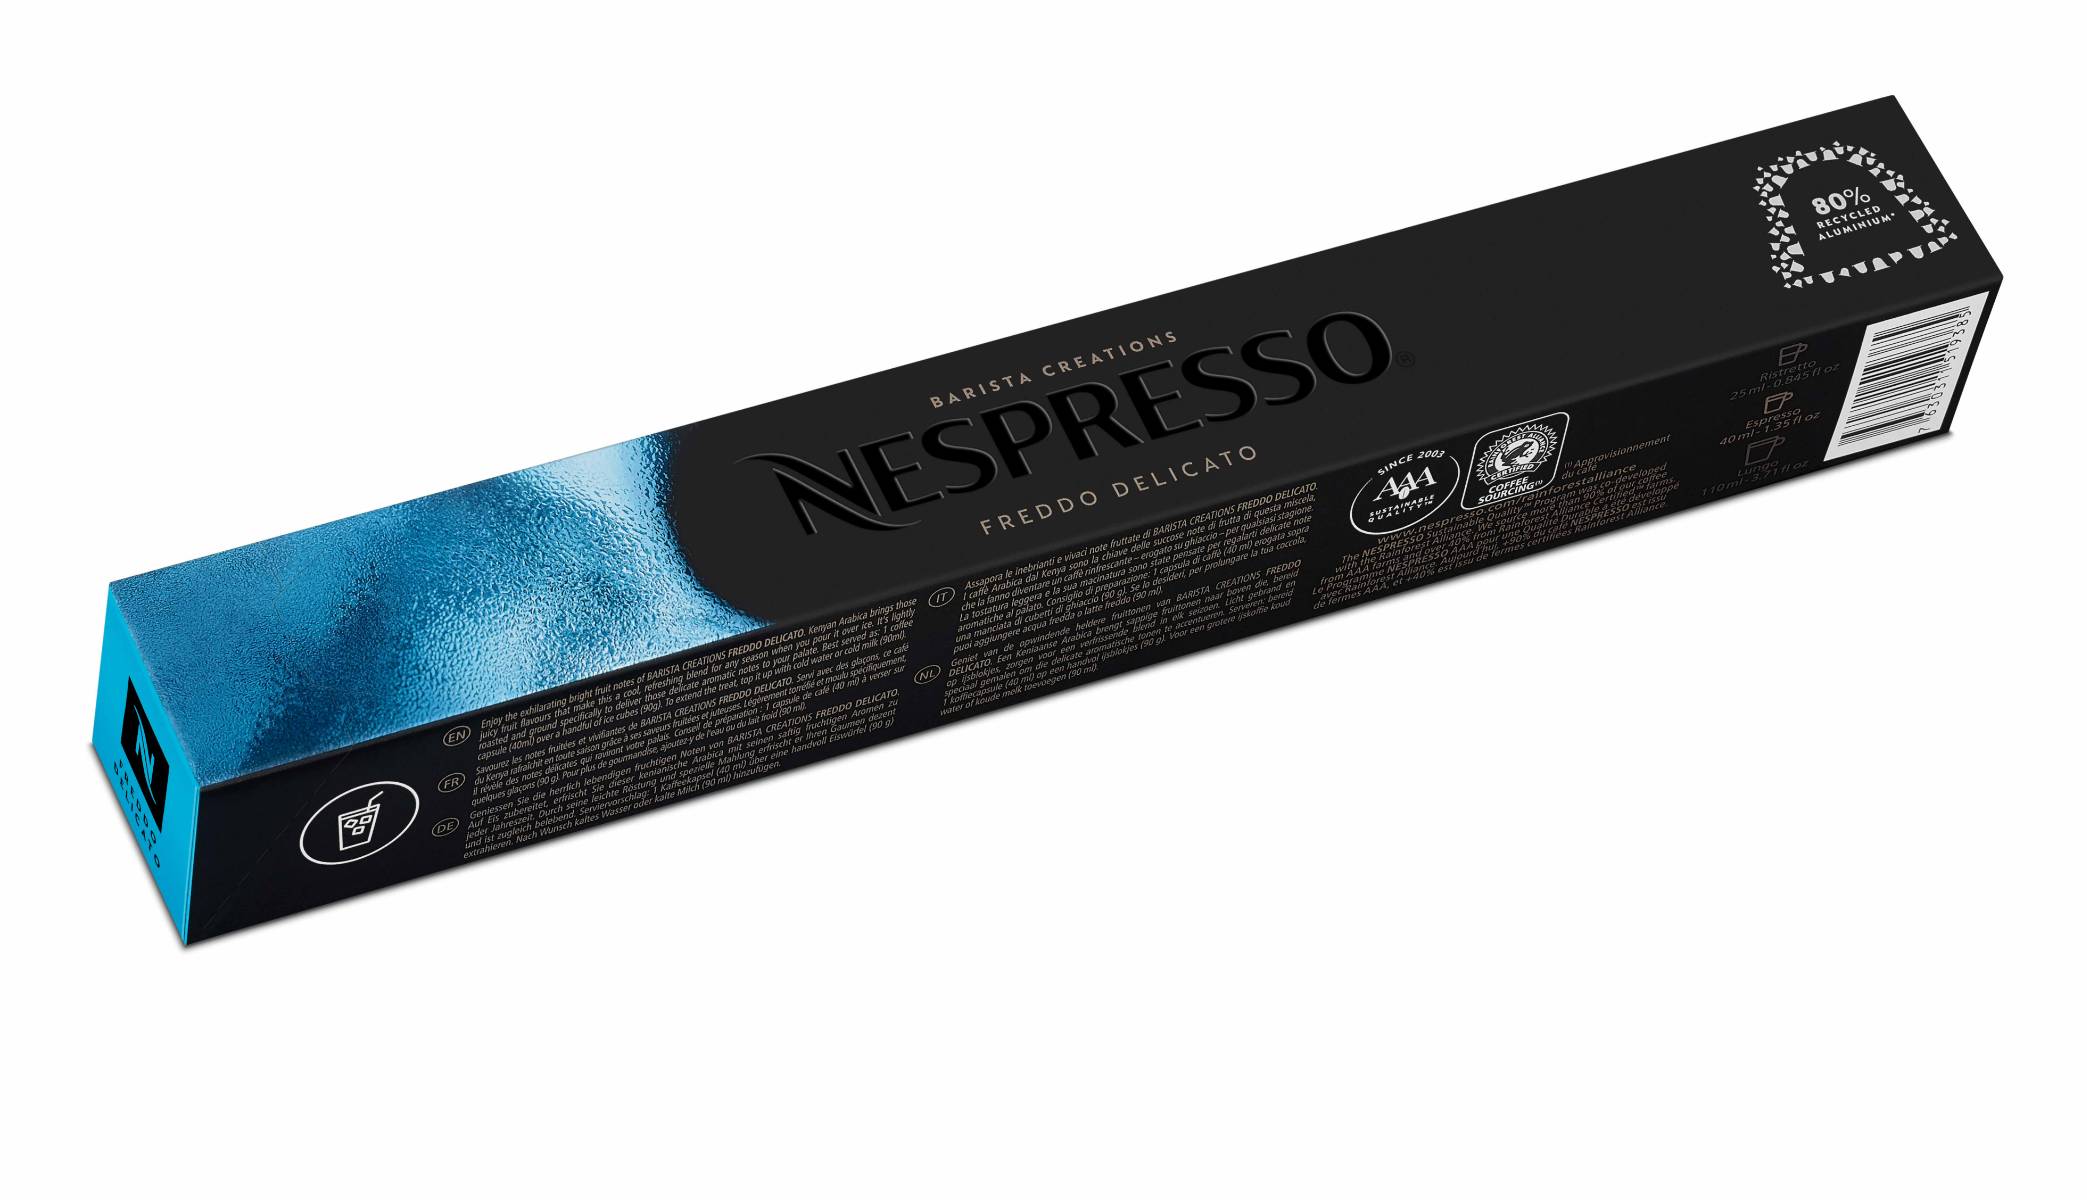 A sleeve of the Nespresso Freddo Delicato.